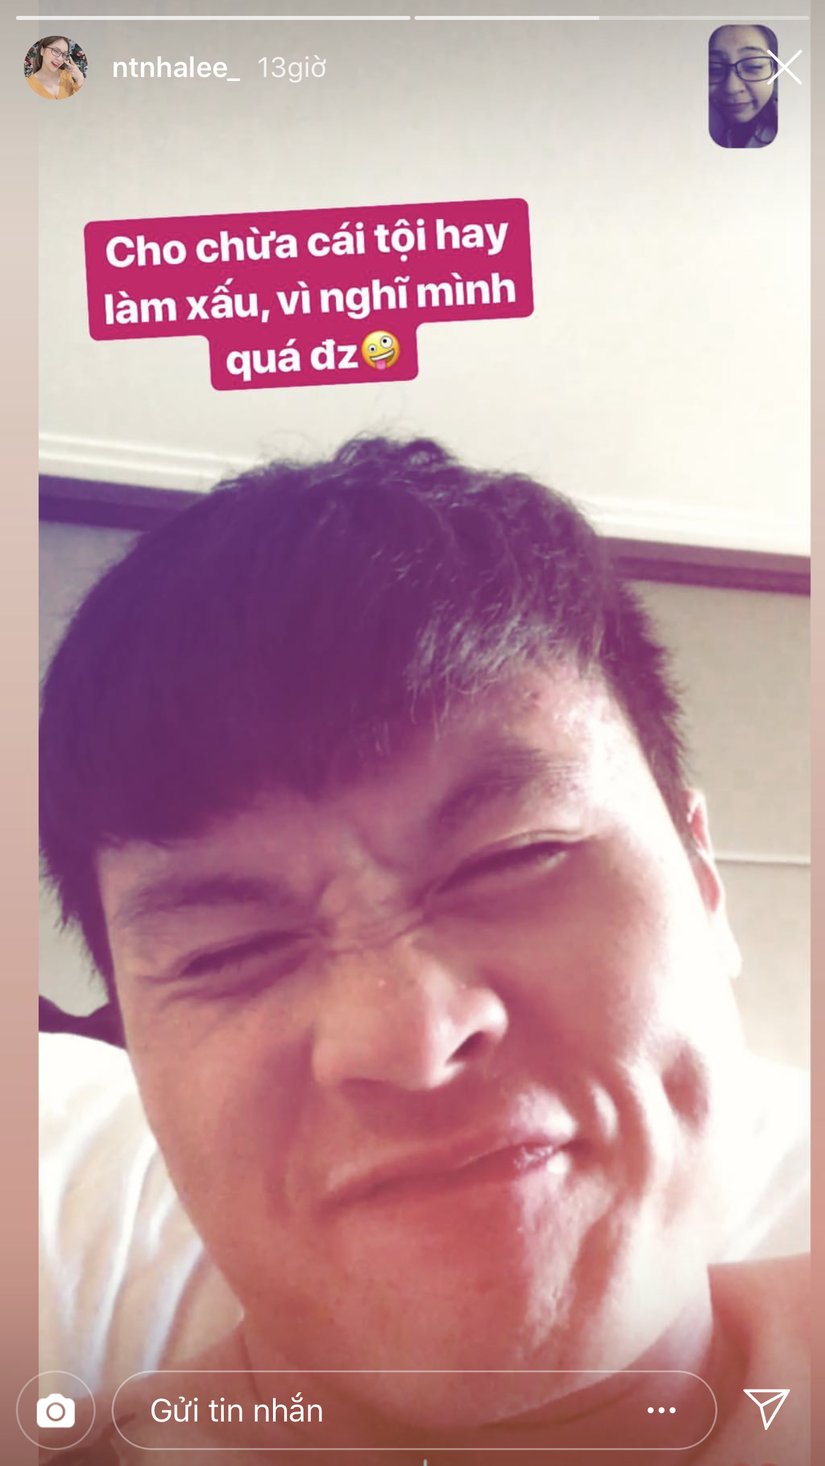 Hình ảnh của Quang Hải được Nhật Lê chia sẻ trên Instagram.